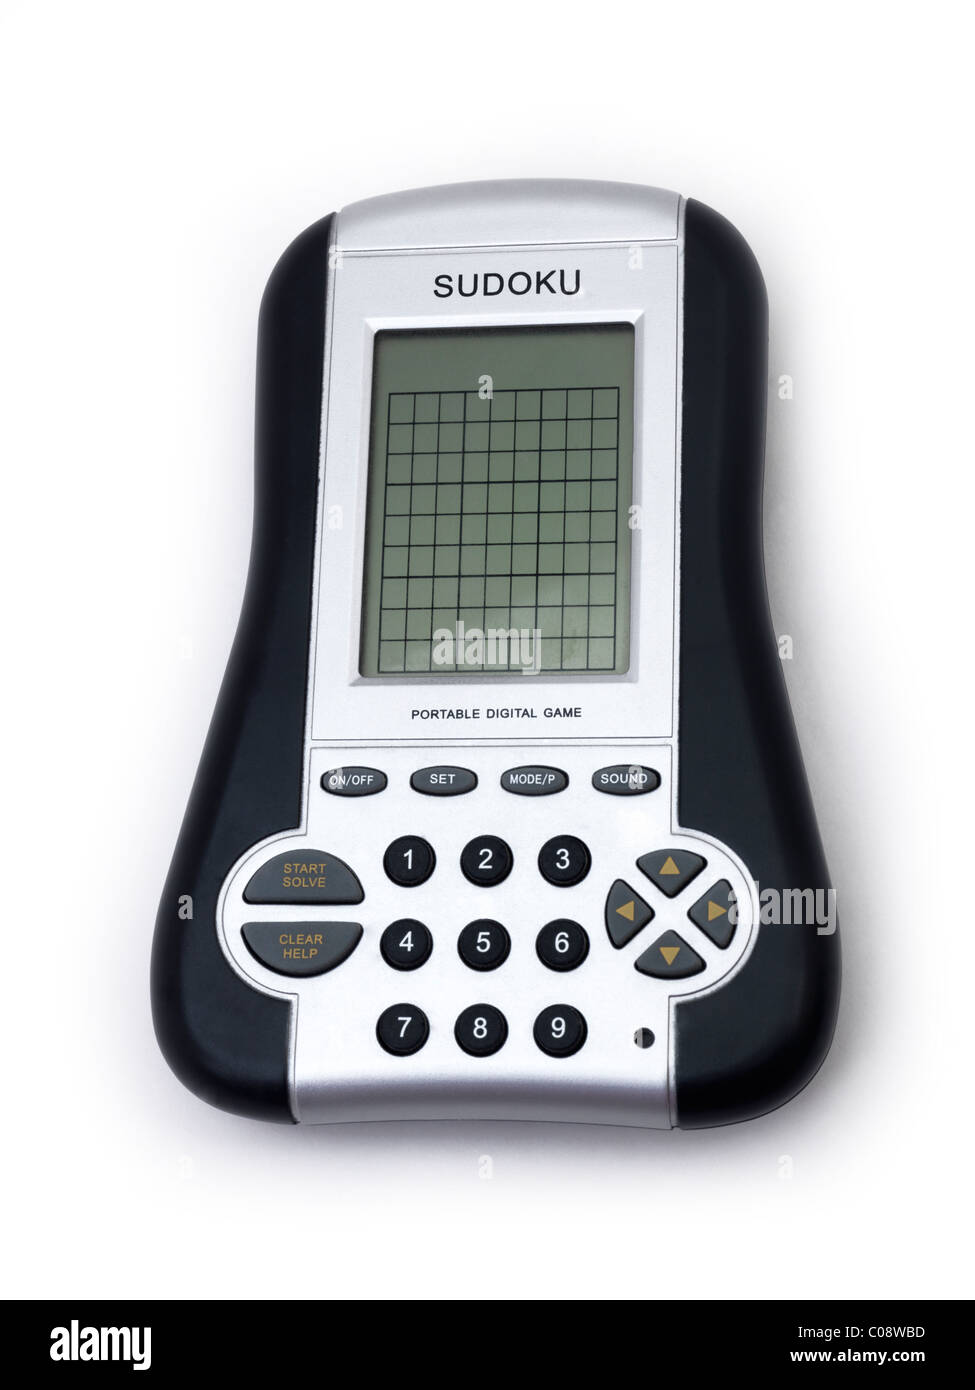 Juego Sudoku electrónico Fotografía de - Alamy